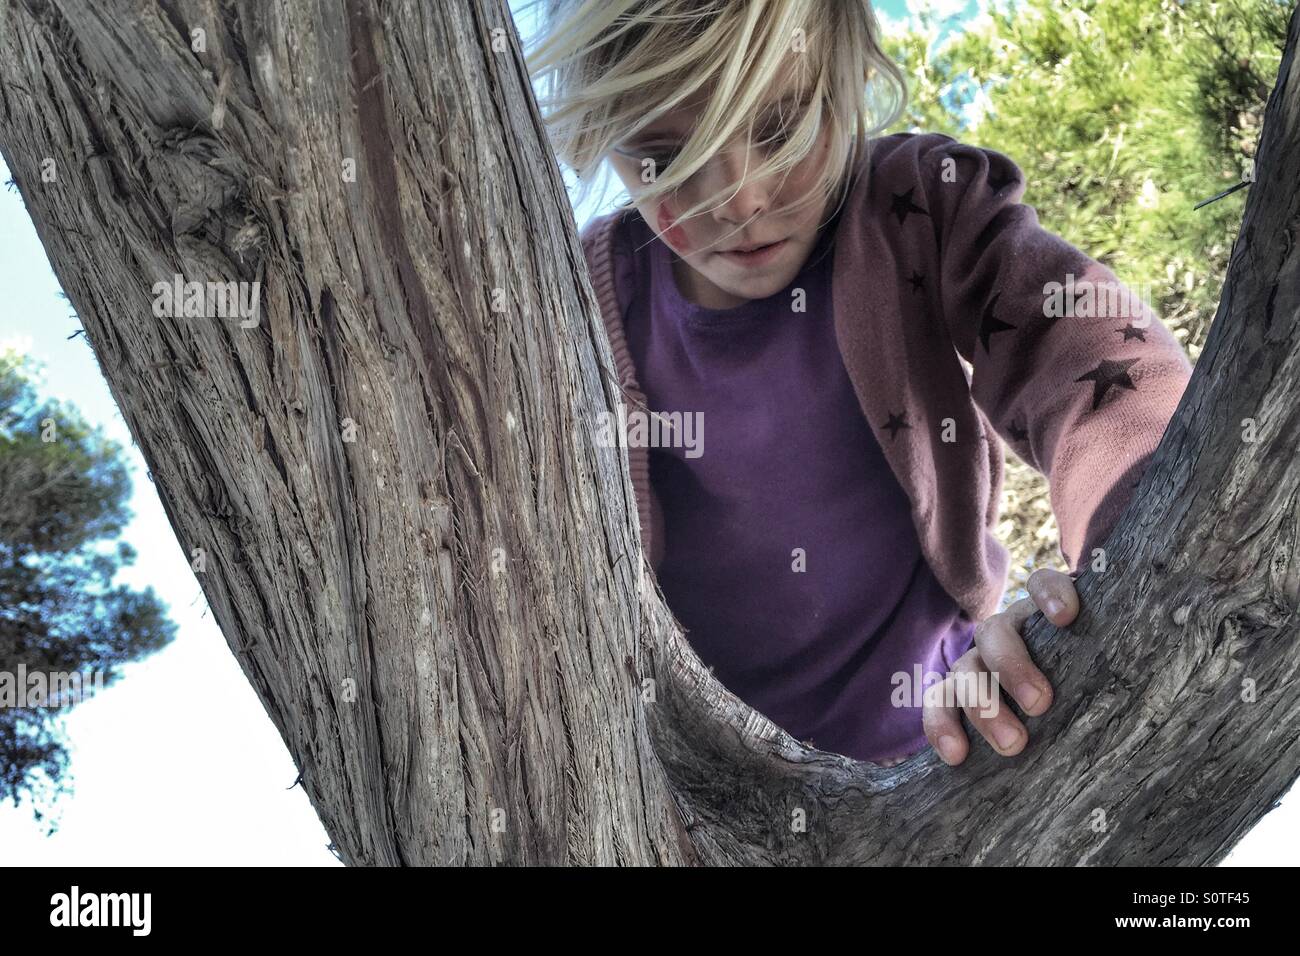 Girl climbing un arbre Banque D'Images